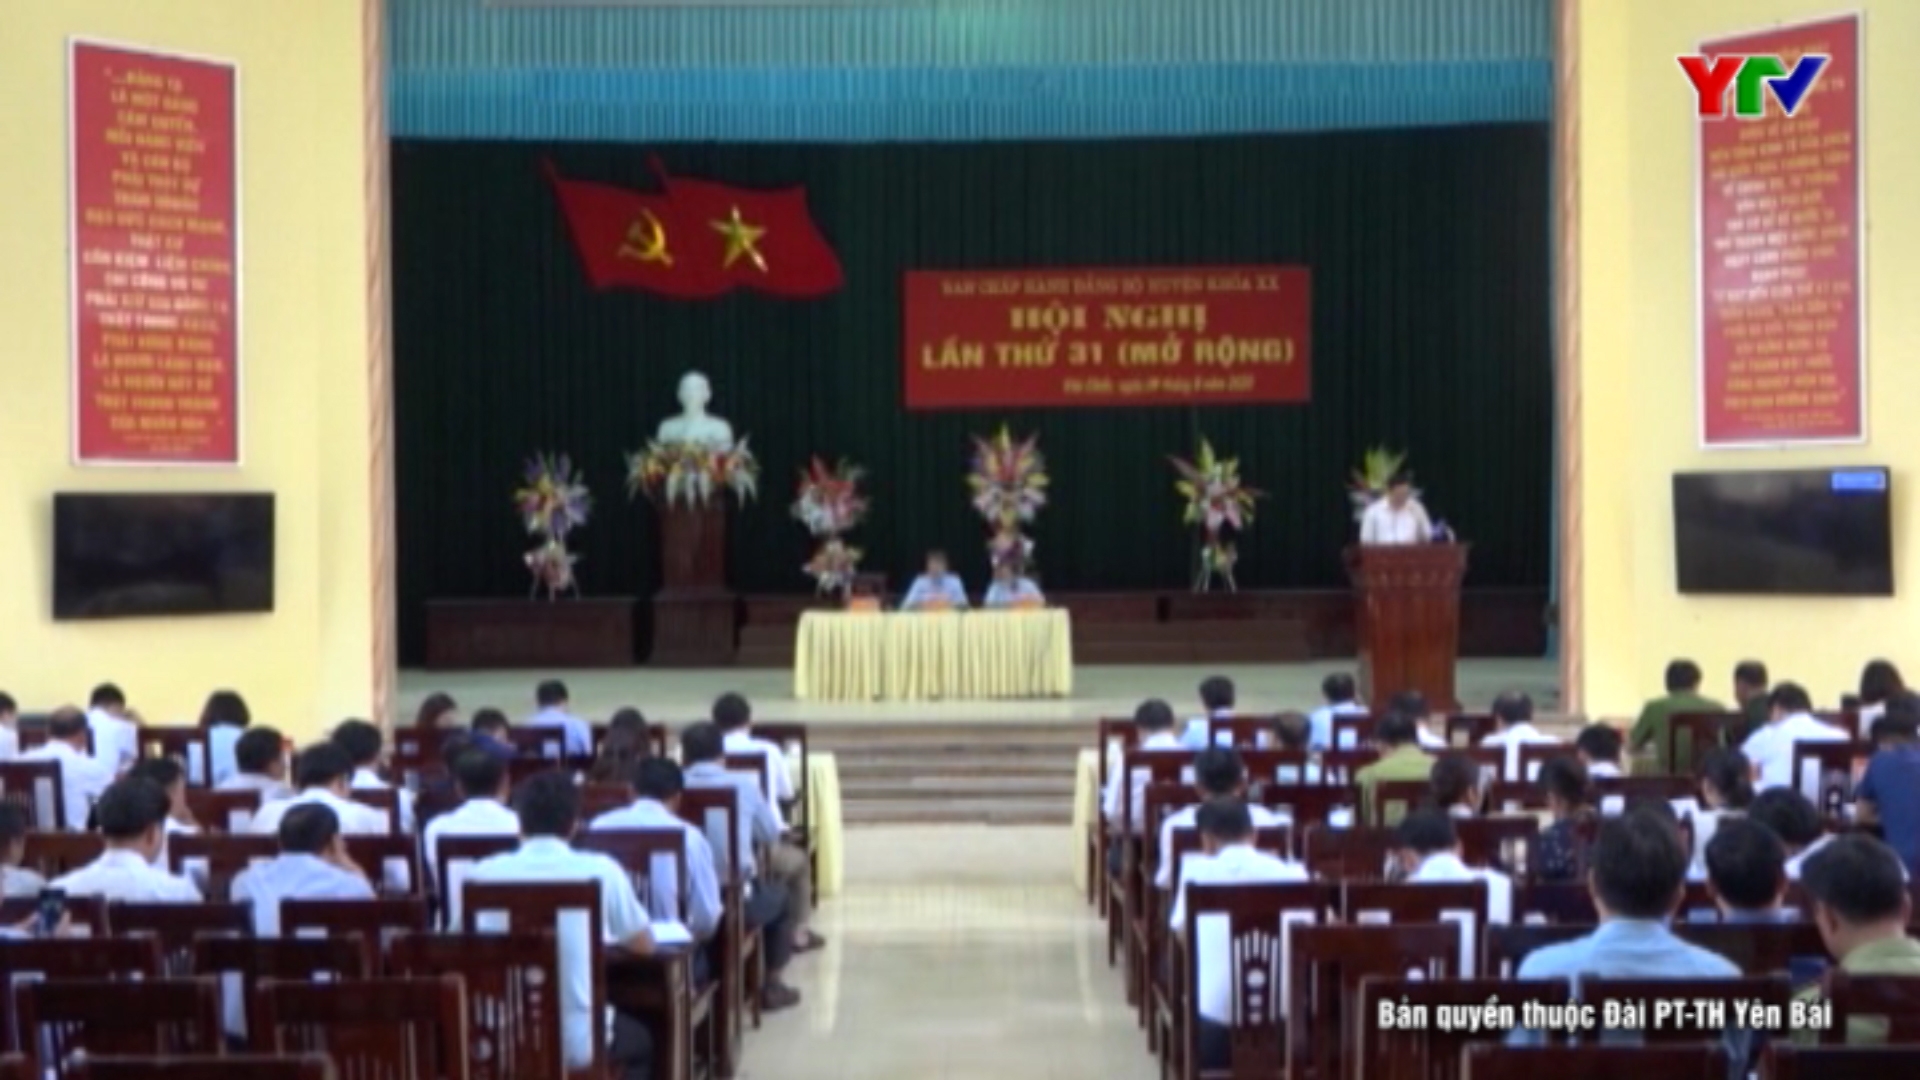 Hội nghị Ban Chấp hành Đảng bộ huyện Văn Chấn lần thứ 31 (mở rộng)